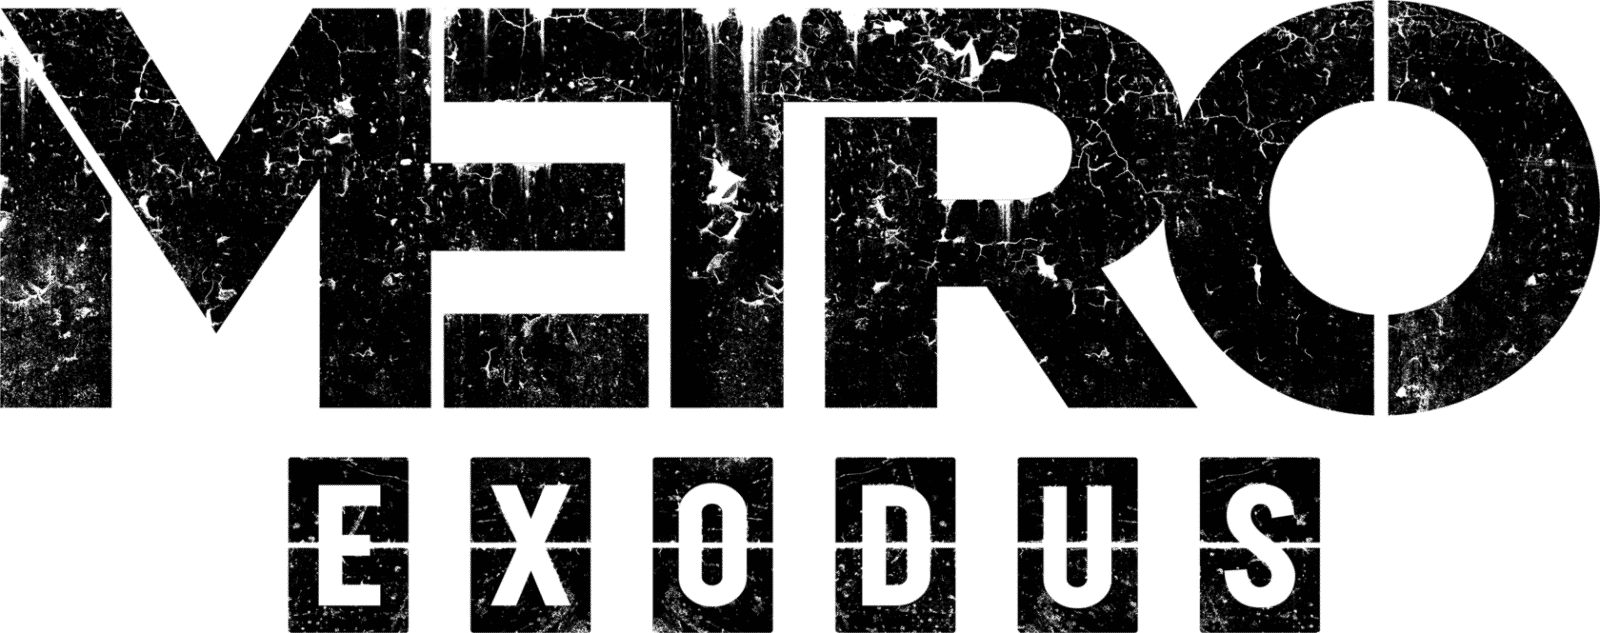 Metro Exodus Logo